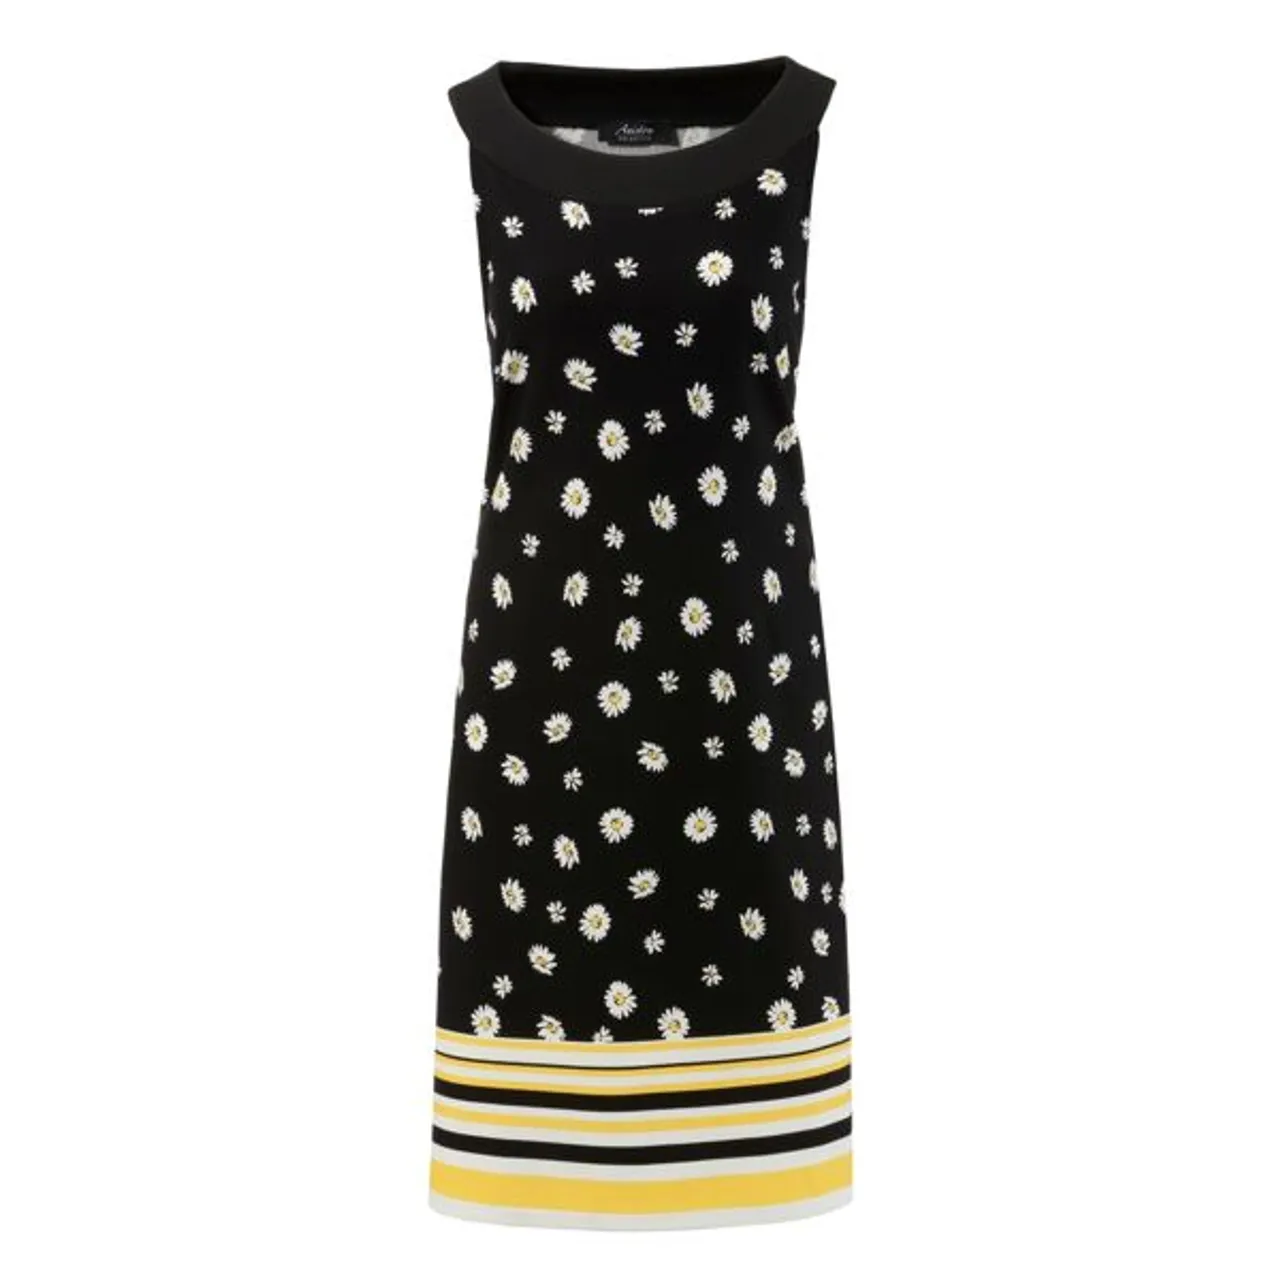 Sommerkleid ANISTON SELECTED Gr. 44, N-Gr, schwarz (schwarz, weiß, gelb) Damen Kleider Sommerkleider